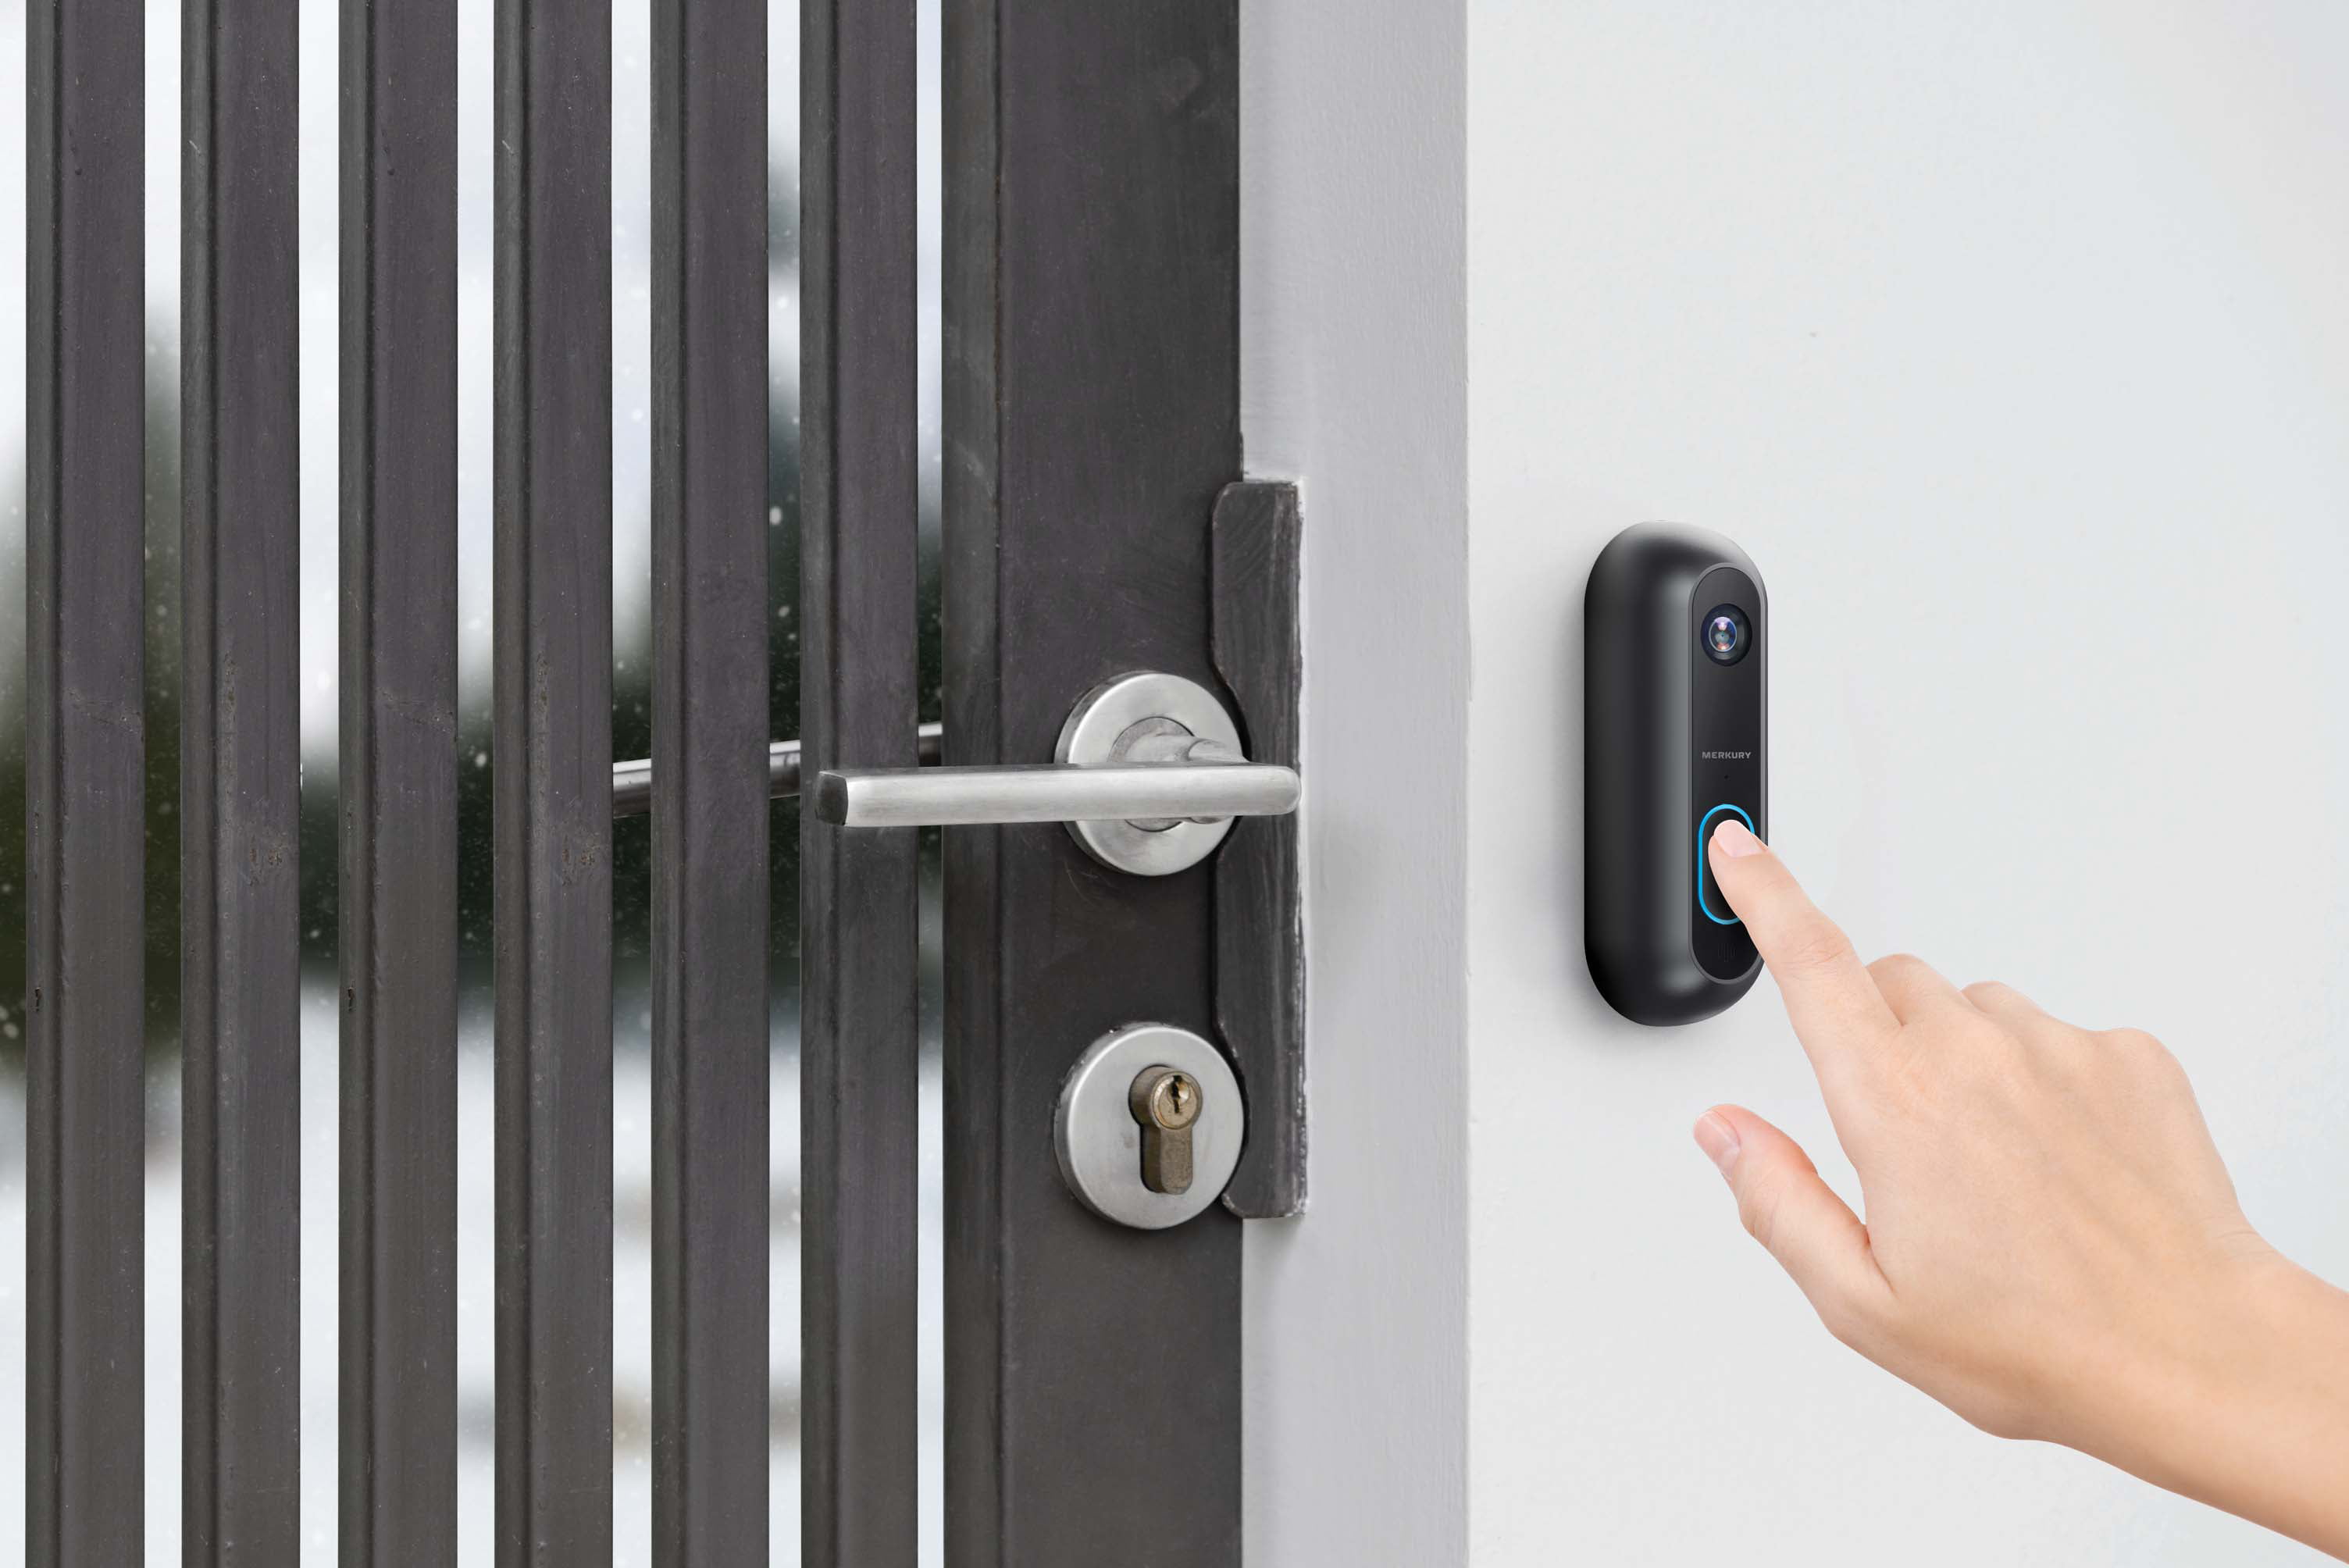 merkury innovations smart doorbell with 1080p camera